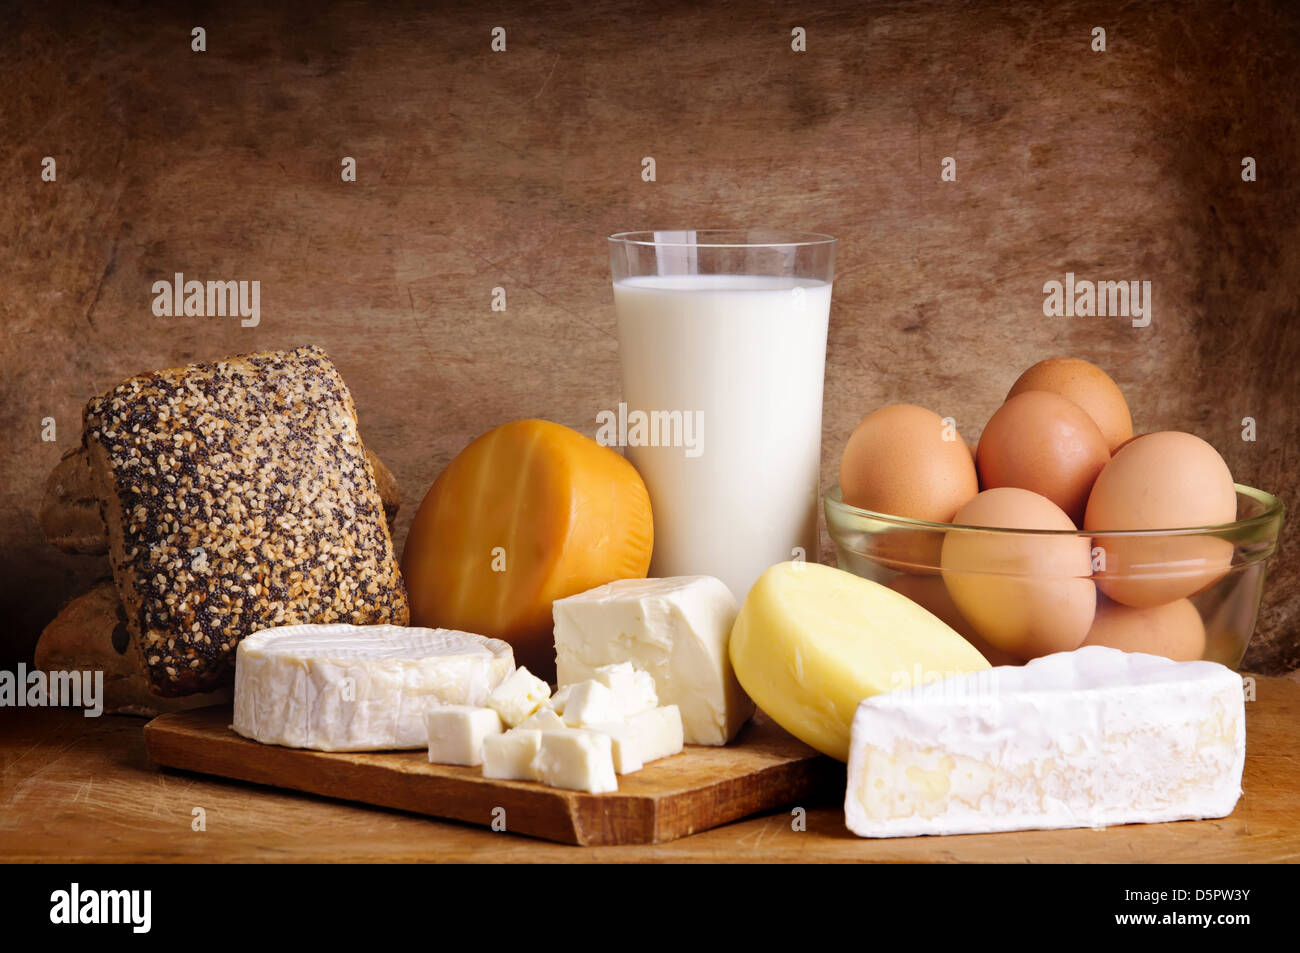 La vie toujours avec les produits laitiers, lait, œufs, pain et fromage sur un fond de bois vintage Banque D'Images